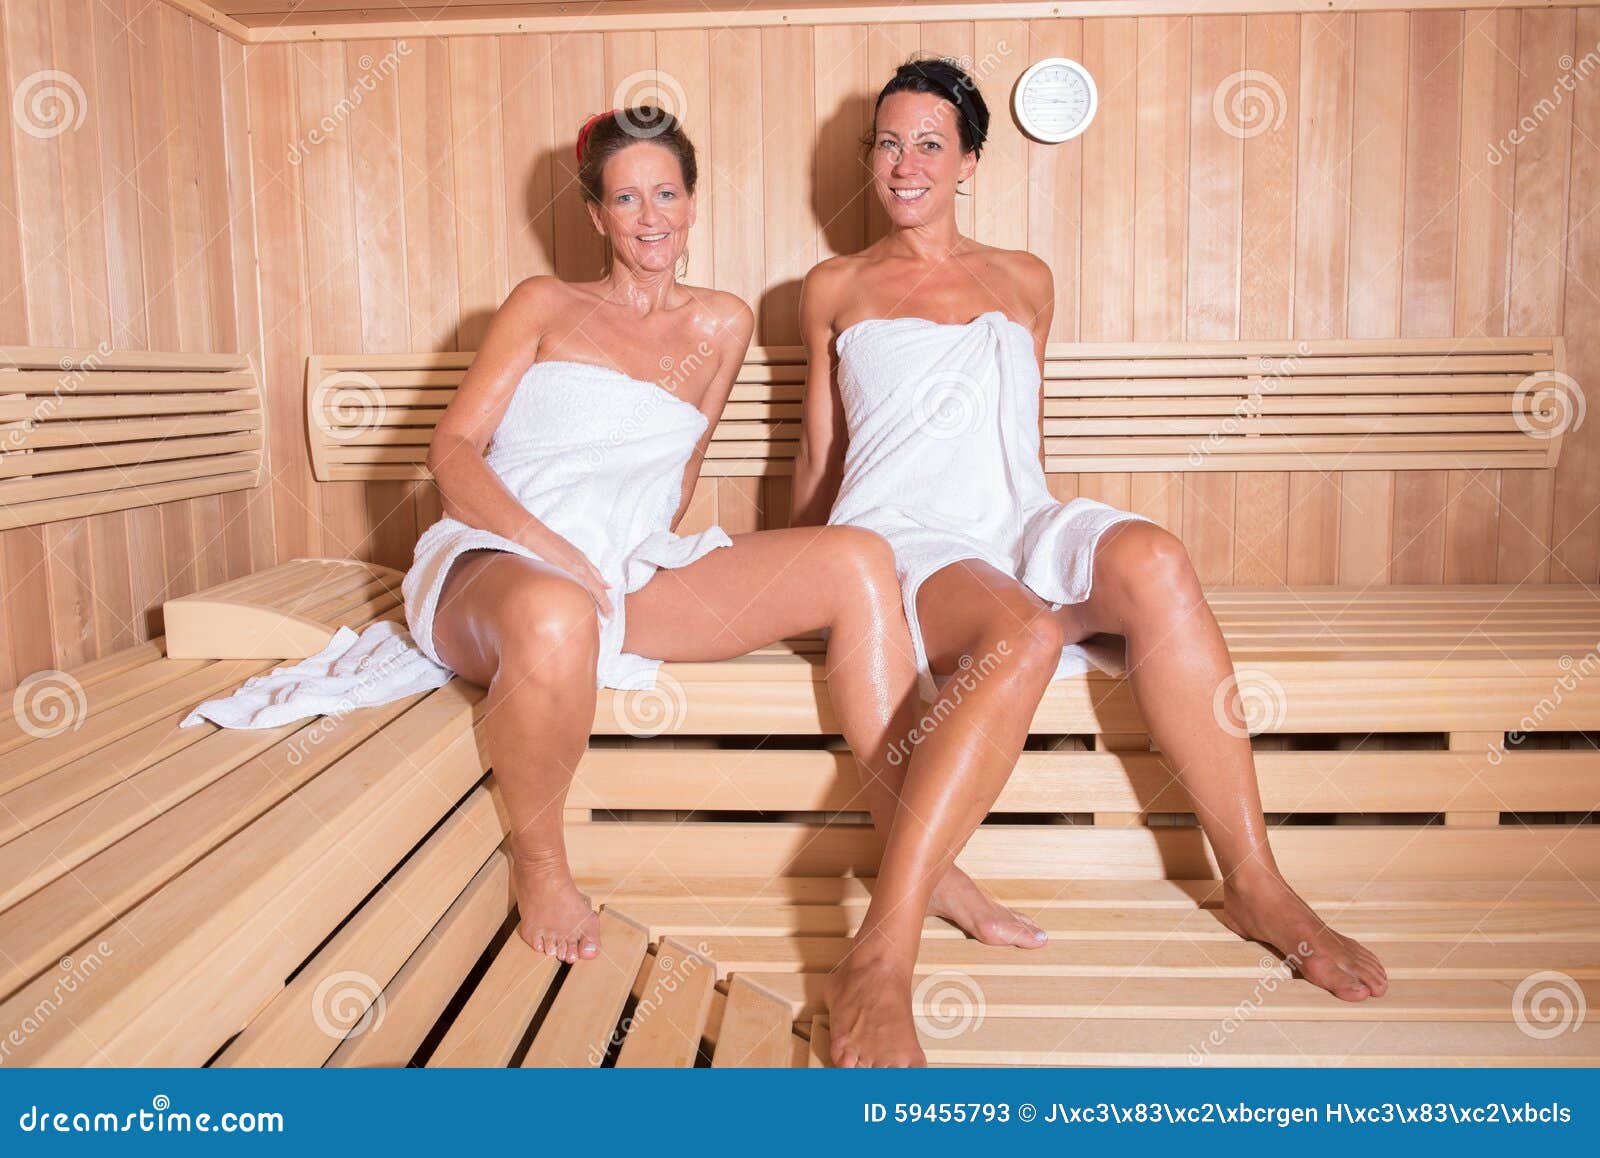 Der sauna geile frauen in Sauna